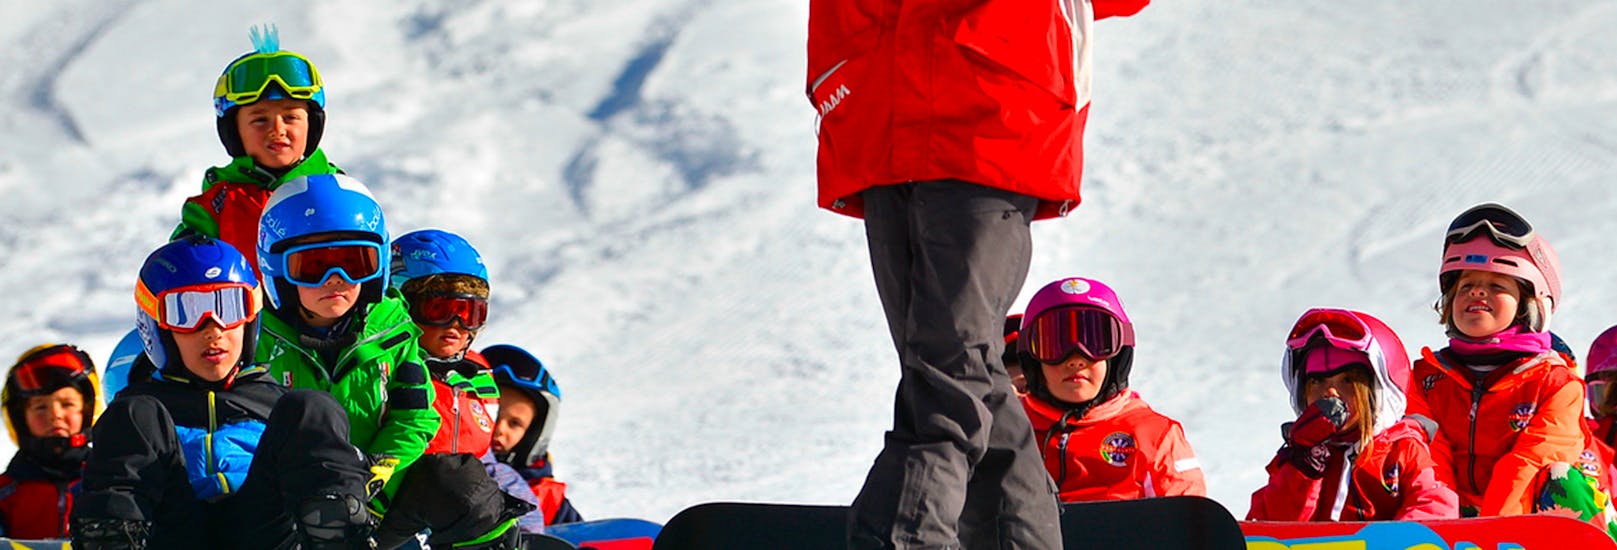 Kinder-Snowboardkurs (5-15 J.) für leicht Fortgeschrittene.